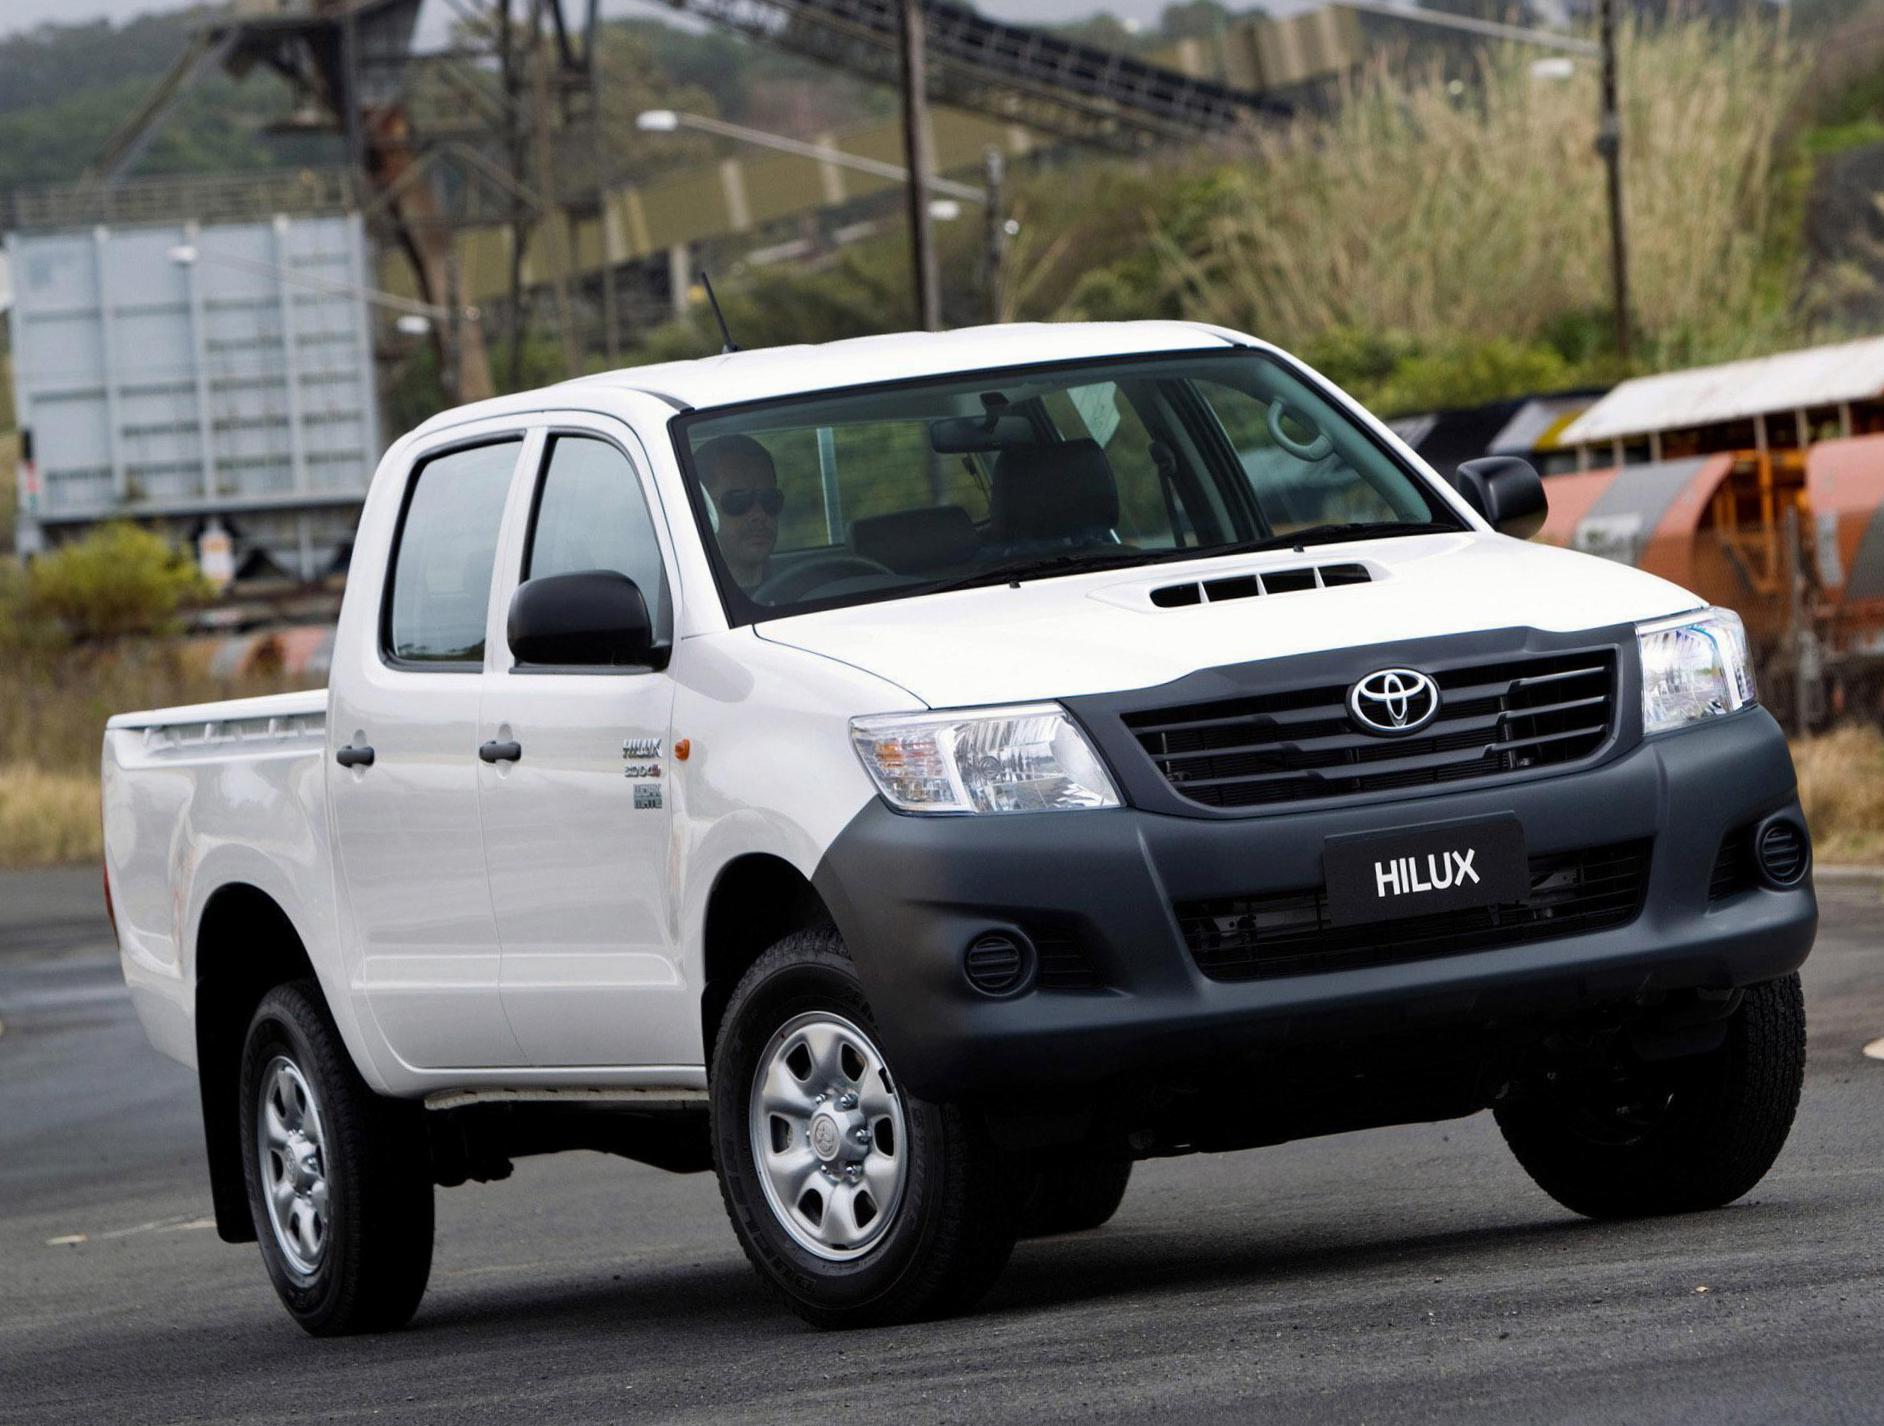 Toyota Hilux Double Cab reviews minivan